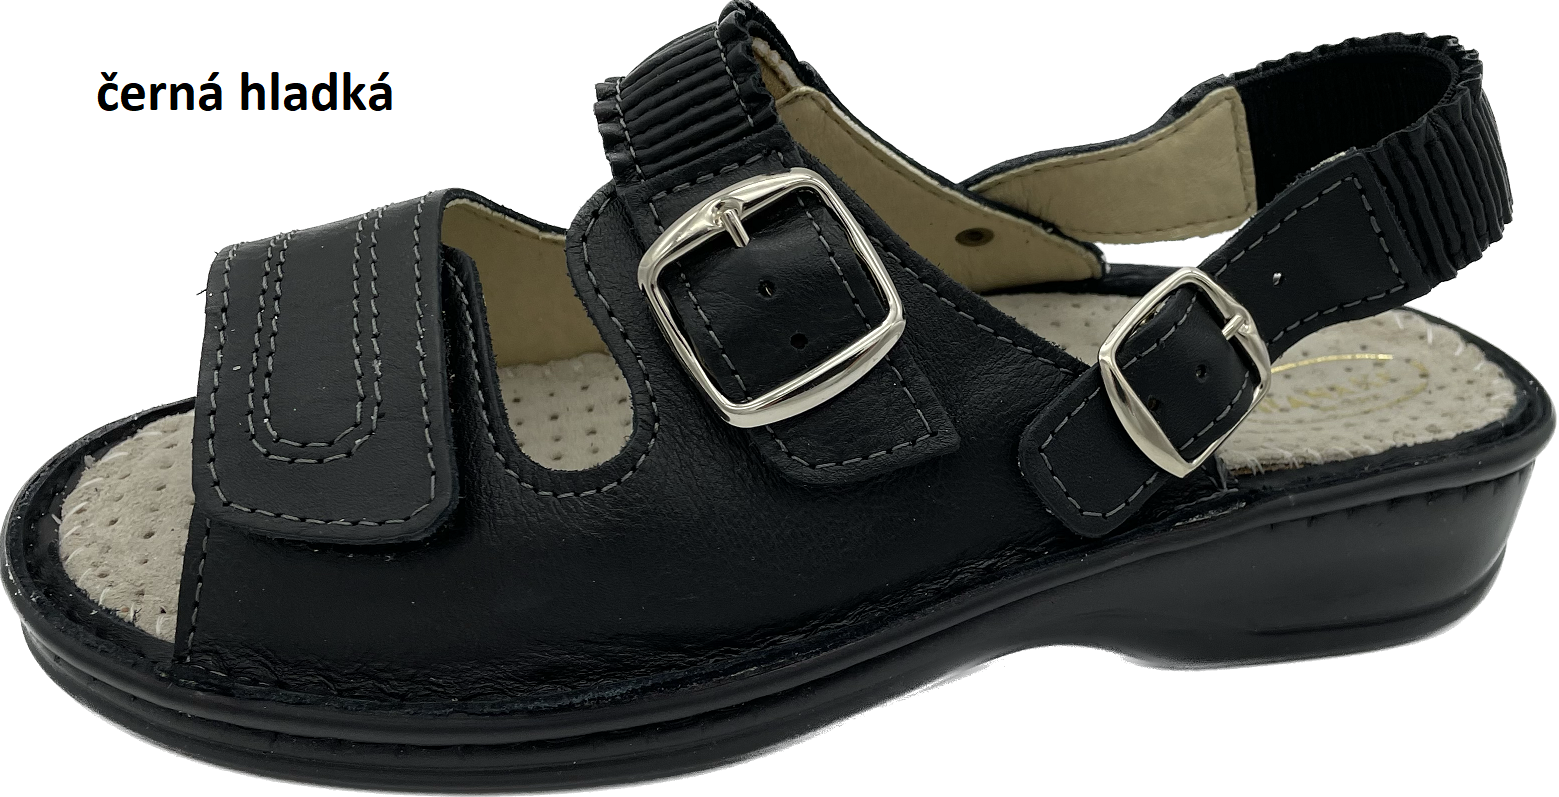 Boty Hanák vzor 305 P - černá podešev Barva usně: černá hladká, Velikosti obuvi: 37